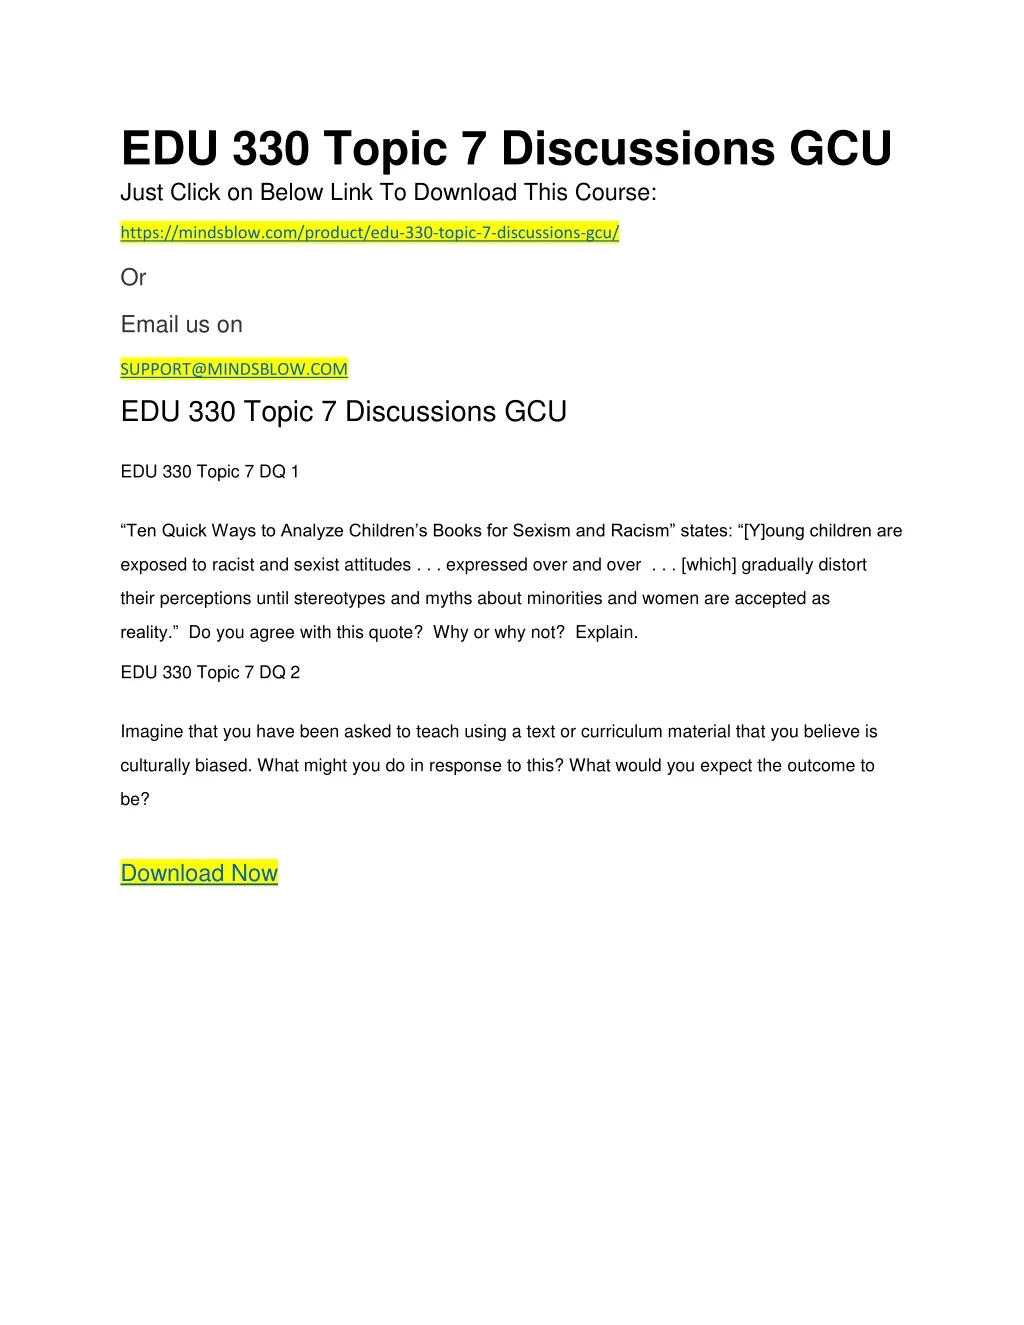 edu 330 topic 7 discussions gcu just click